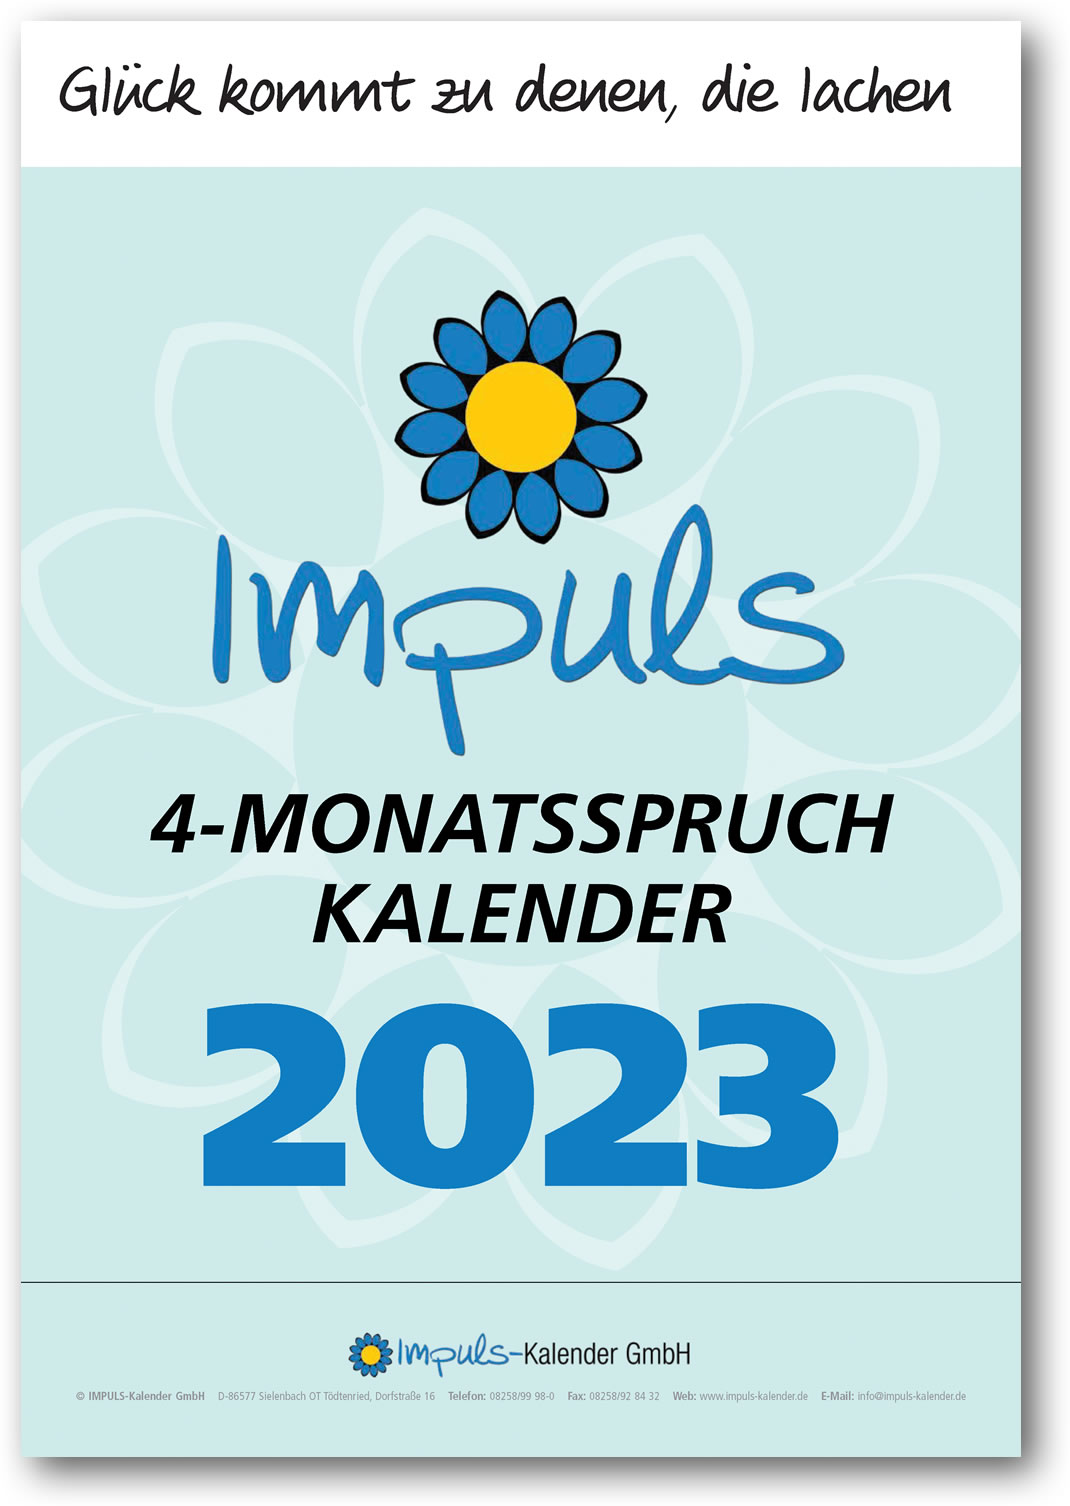 4-Monatsspruchkalender von Impuls-Kalender GmbH. Jetzt für das nächste Jahr kaufen